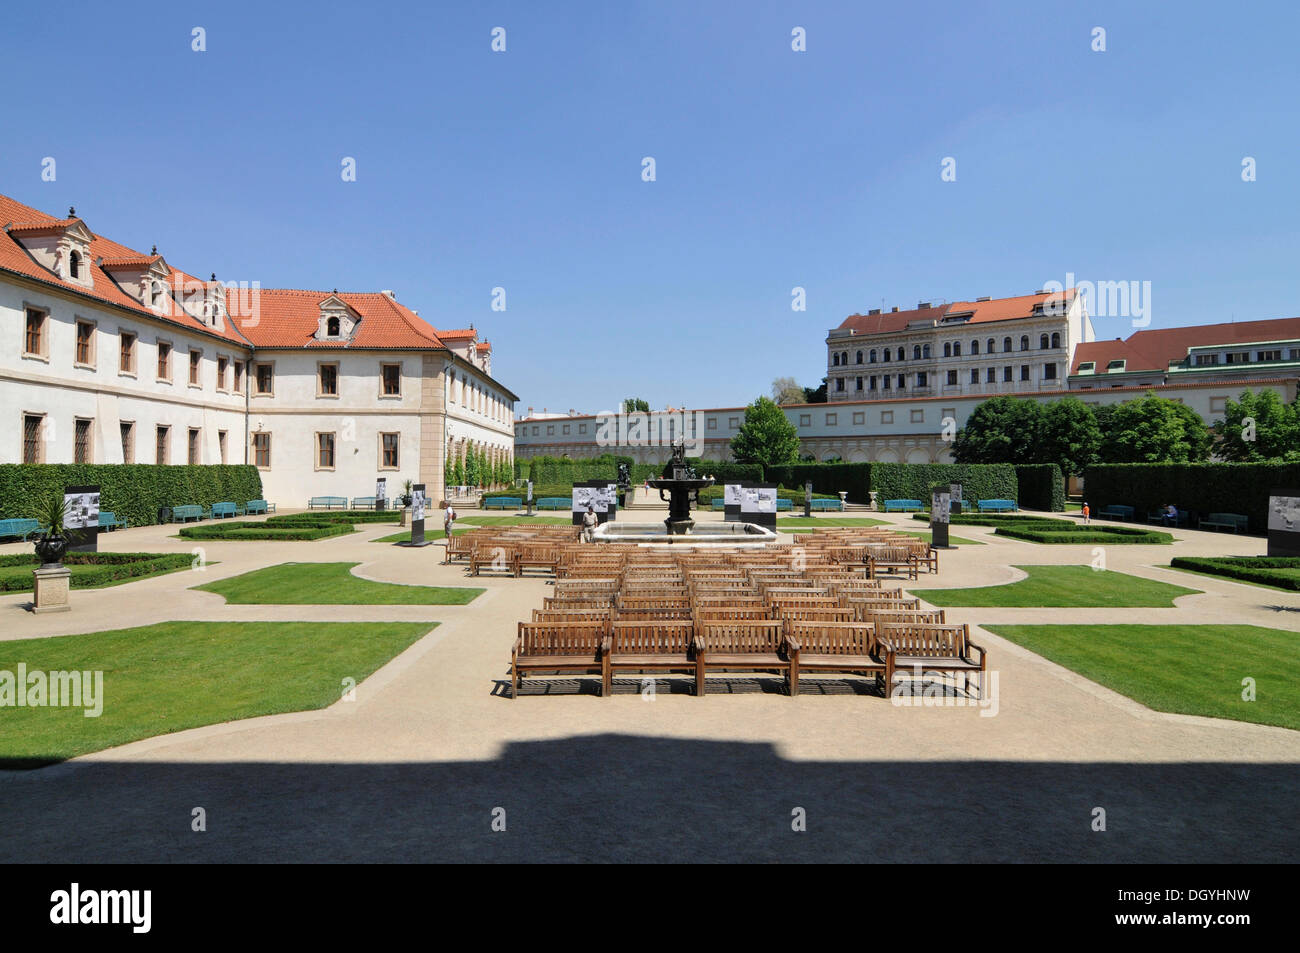 Waldstein Garden, Wallenstein Palace, Prag, Old Town, Czech Republic, Europe Stock Photo